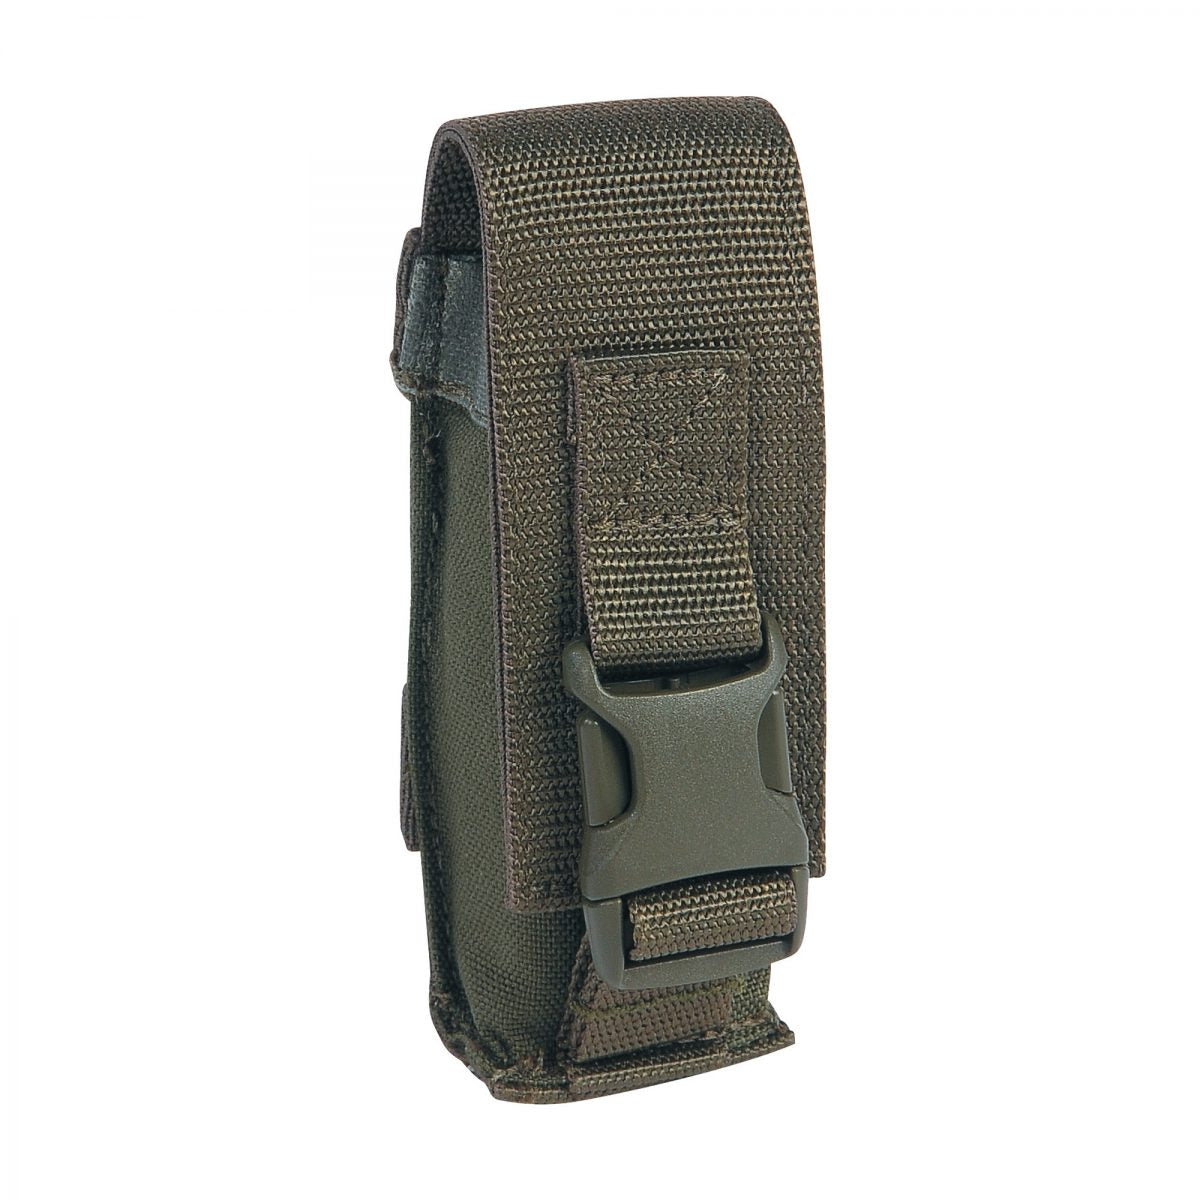 Tasmanian Tiger Tool Pocket Accessories Tasmanian Tiger Small Olive Tactical Gear Supplier Tactical Distributors Australia